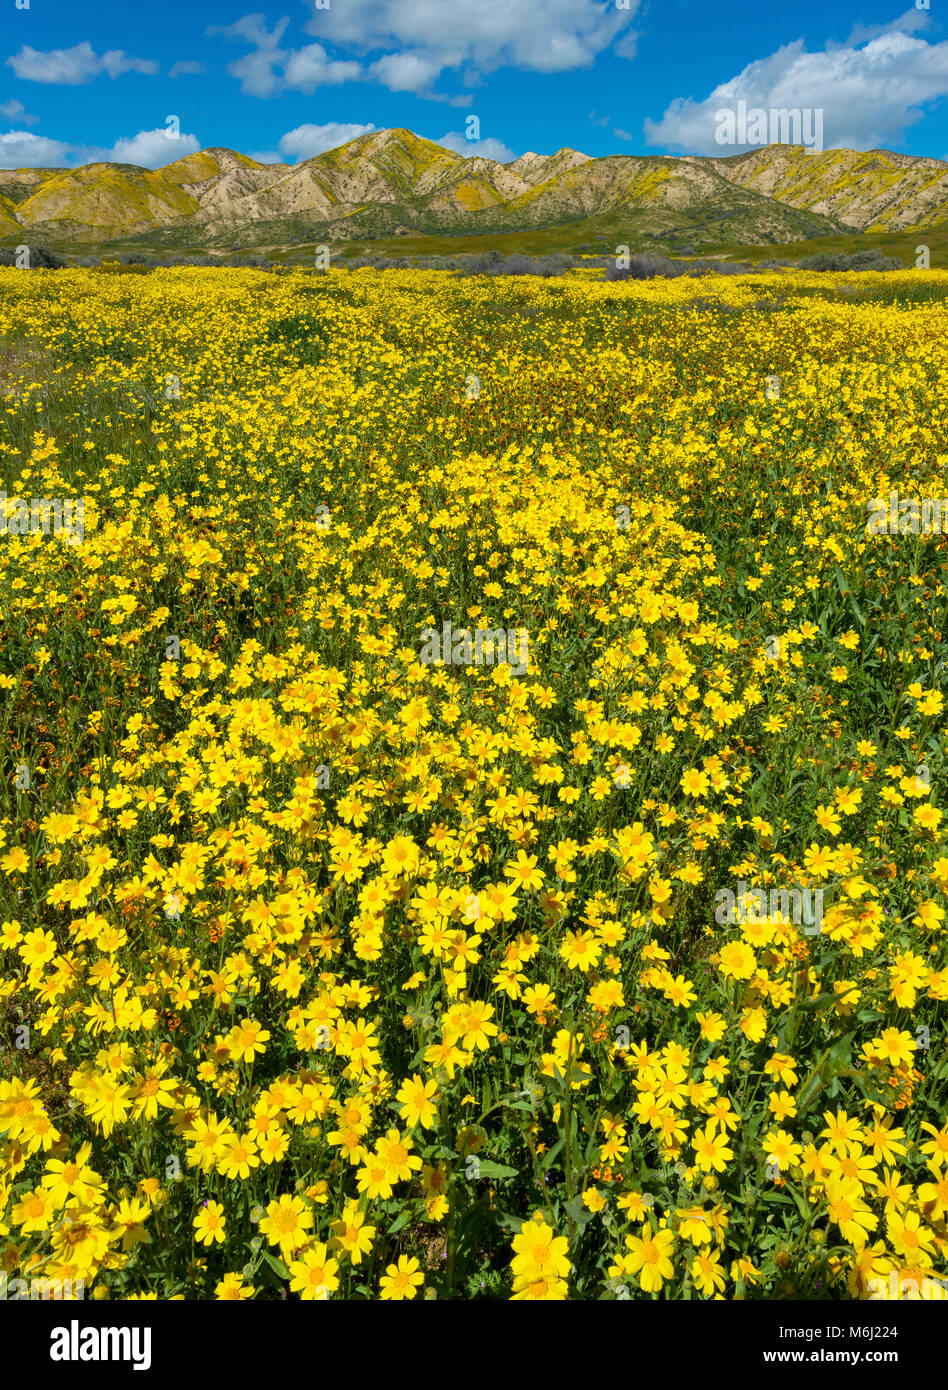 Fiddlenecks, Monolopia, Carizzo Plain National Monument, San Luis Obispo County, California Stock Photo